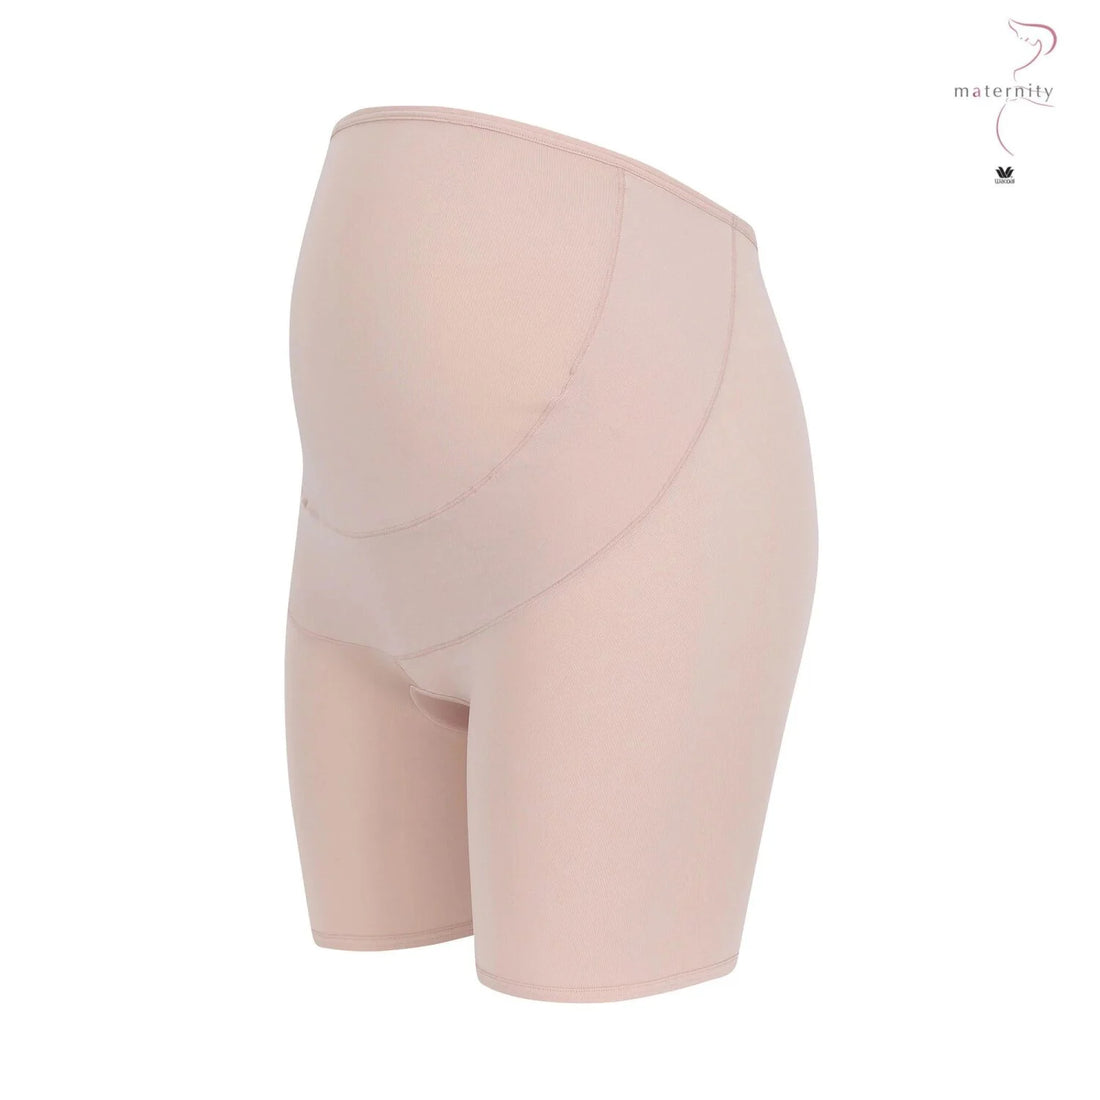 Wacoal Maternity Panty กางเกงในรูปแบบเต็มตัว รุ่น WM6180 สีเบจ (BE)